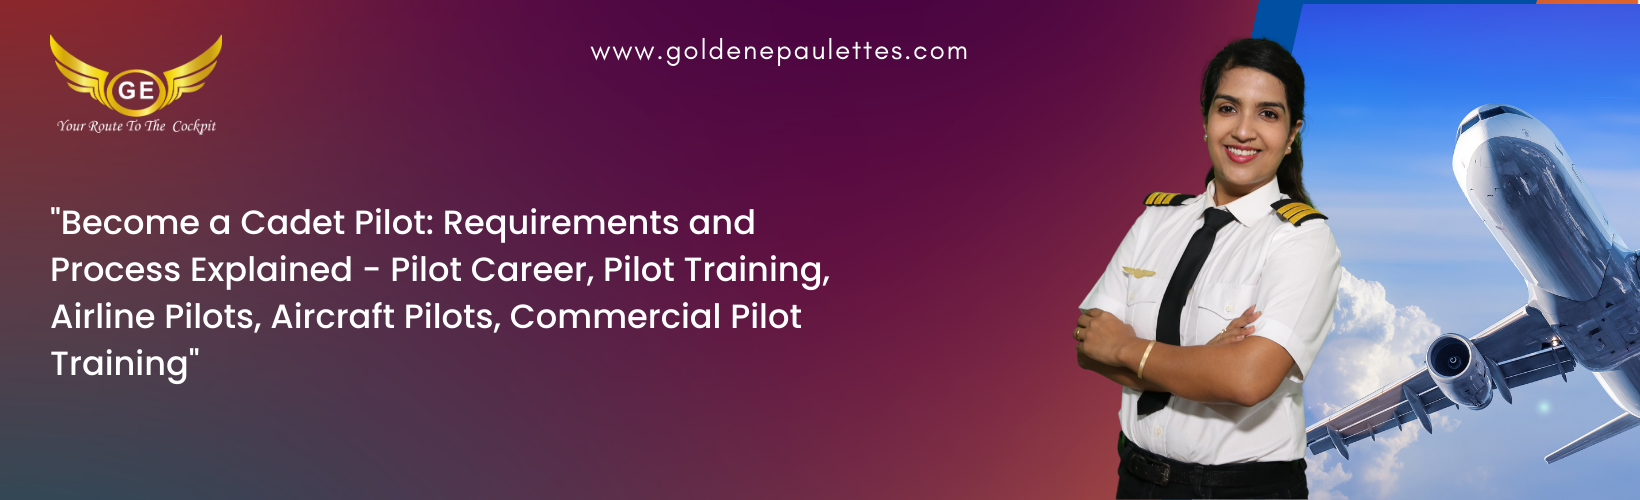 Prerequisites for a Cadet Pilot Program